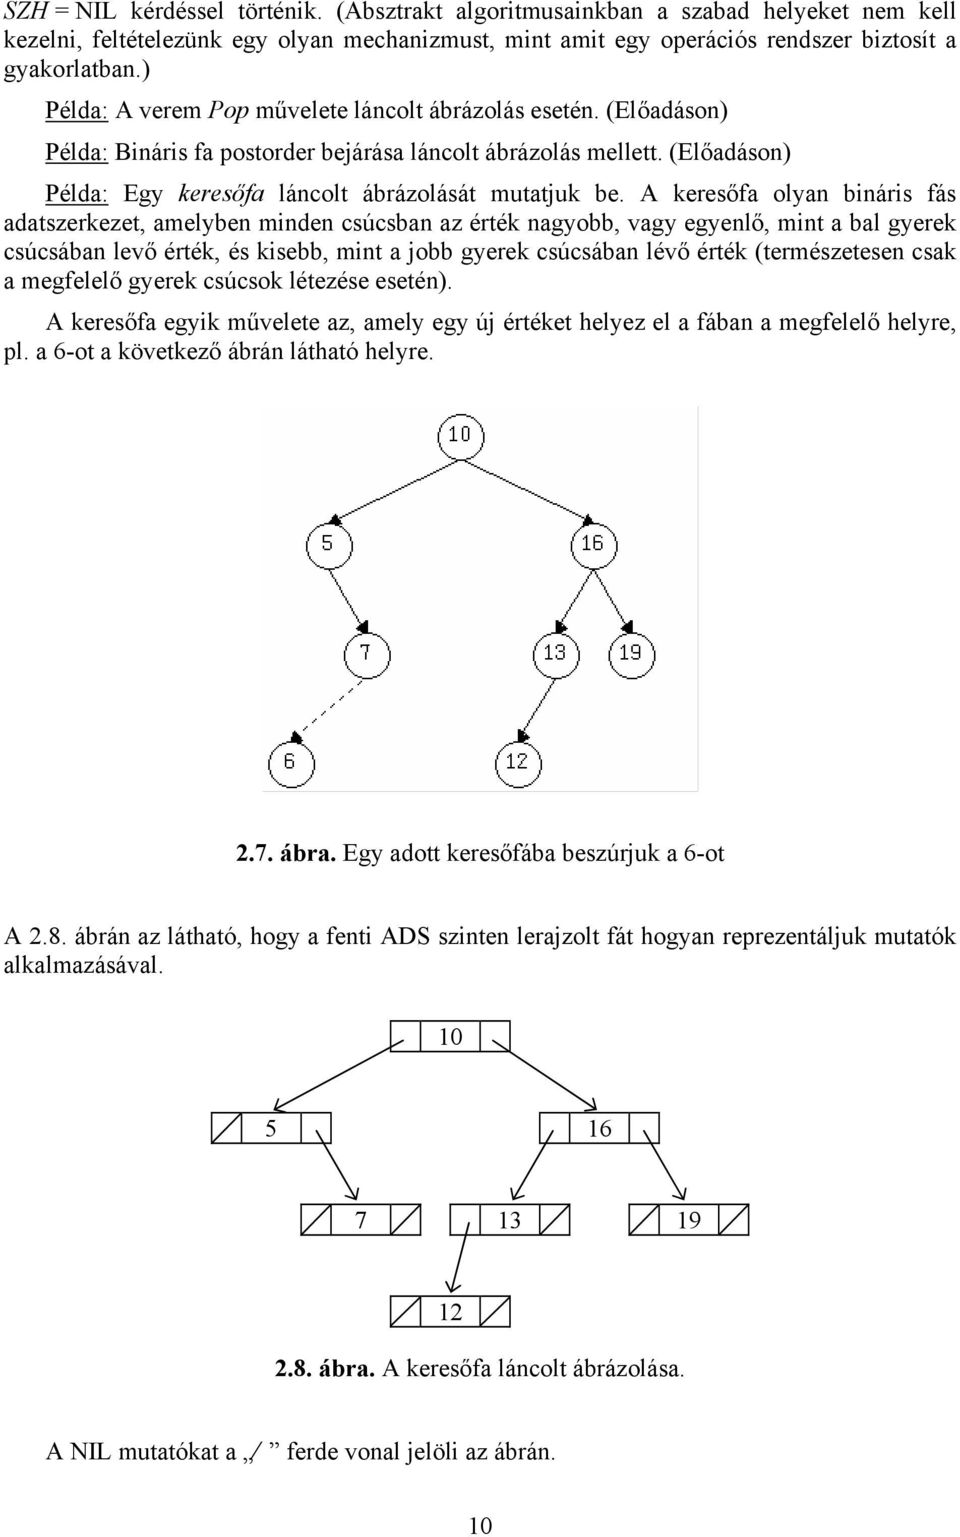 A keresőfa olyan bináris fás adatszerkezet, amelyben minden csúcsban az érték nagyobb, vagy egyenlő, mint a bal gyerek csúcsában levő érték, és kisebb, mint a jobb gyerek csúcsában lévő érték